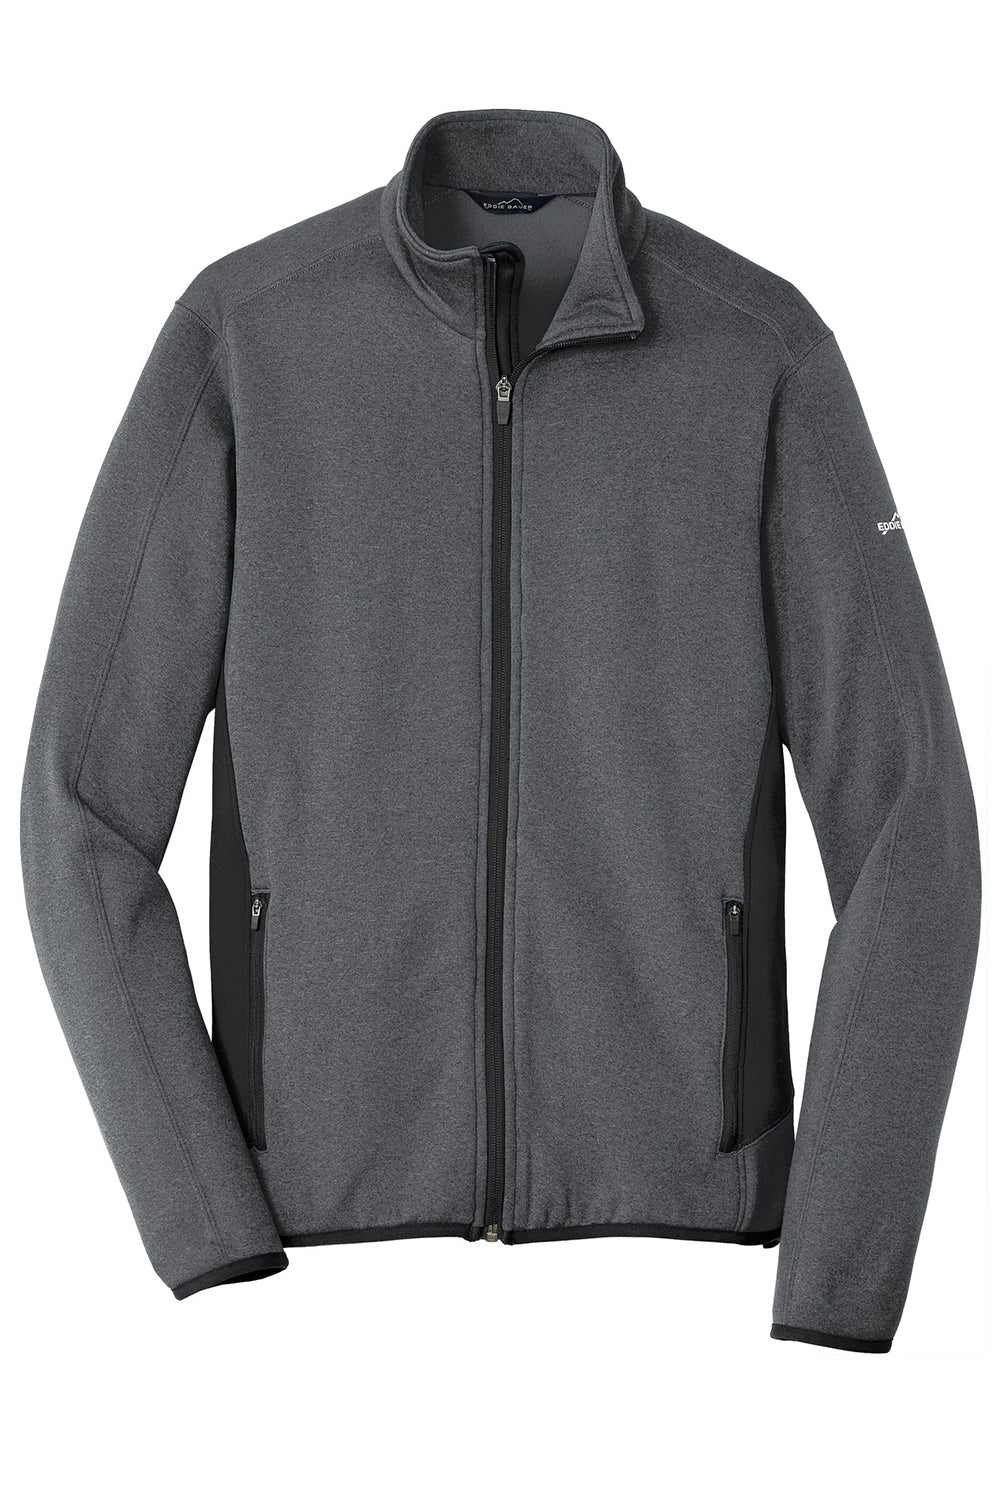 Eddie Bauer EB238 Mens Full Zip Fleece Jacket Heather Dark Charcoal Grey Flat Front